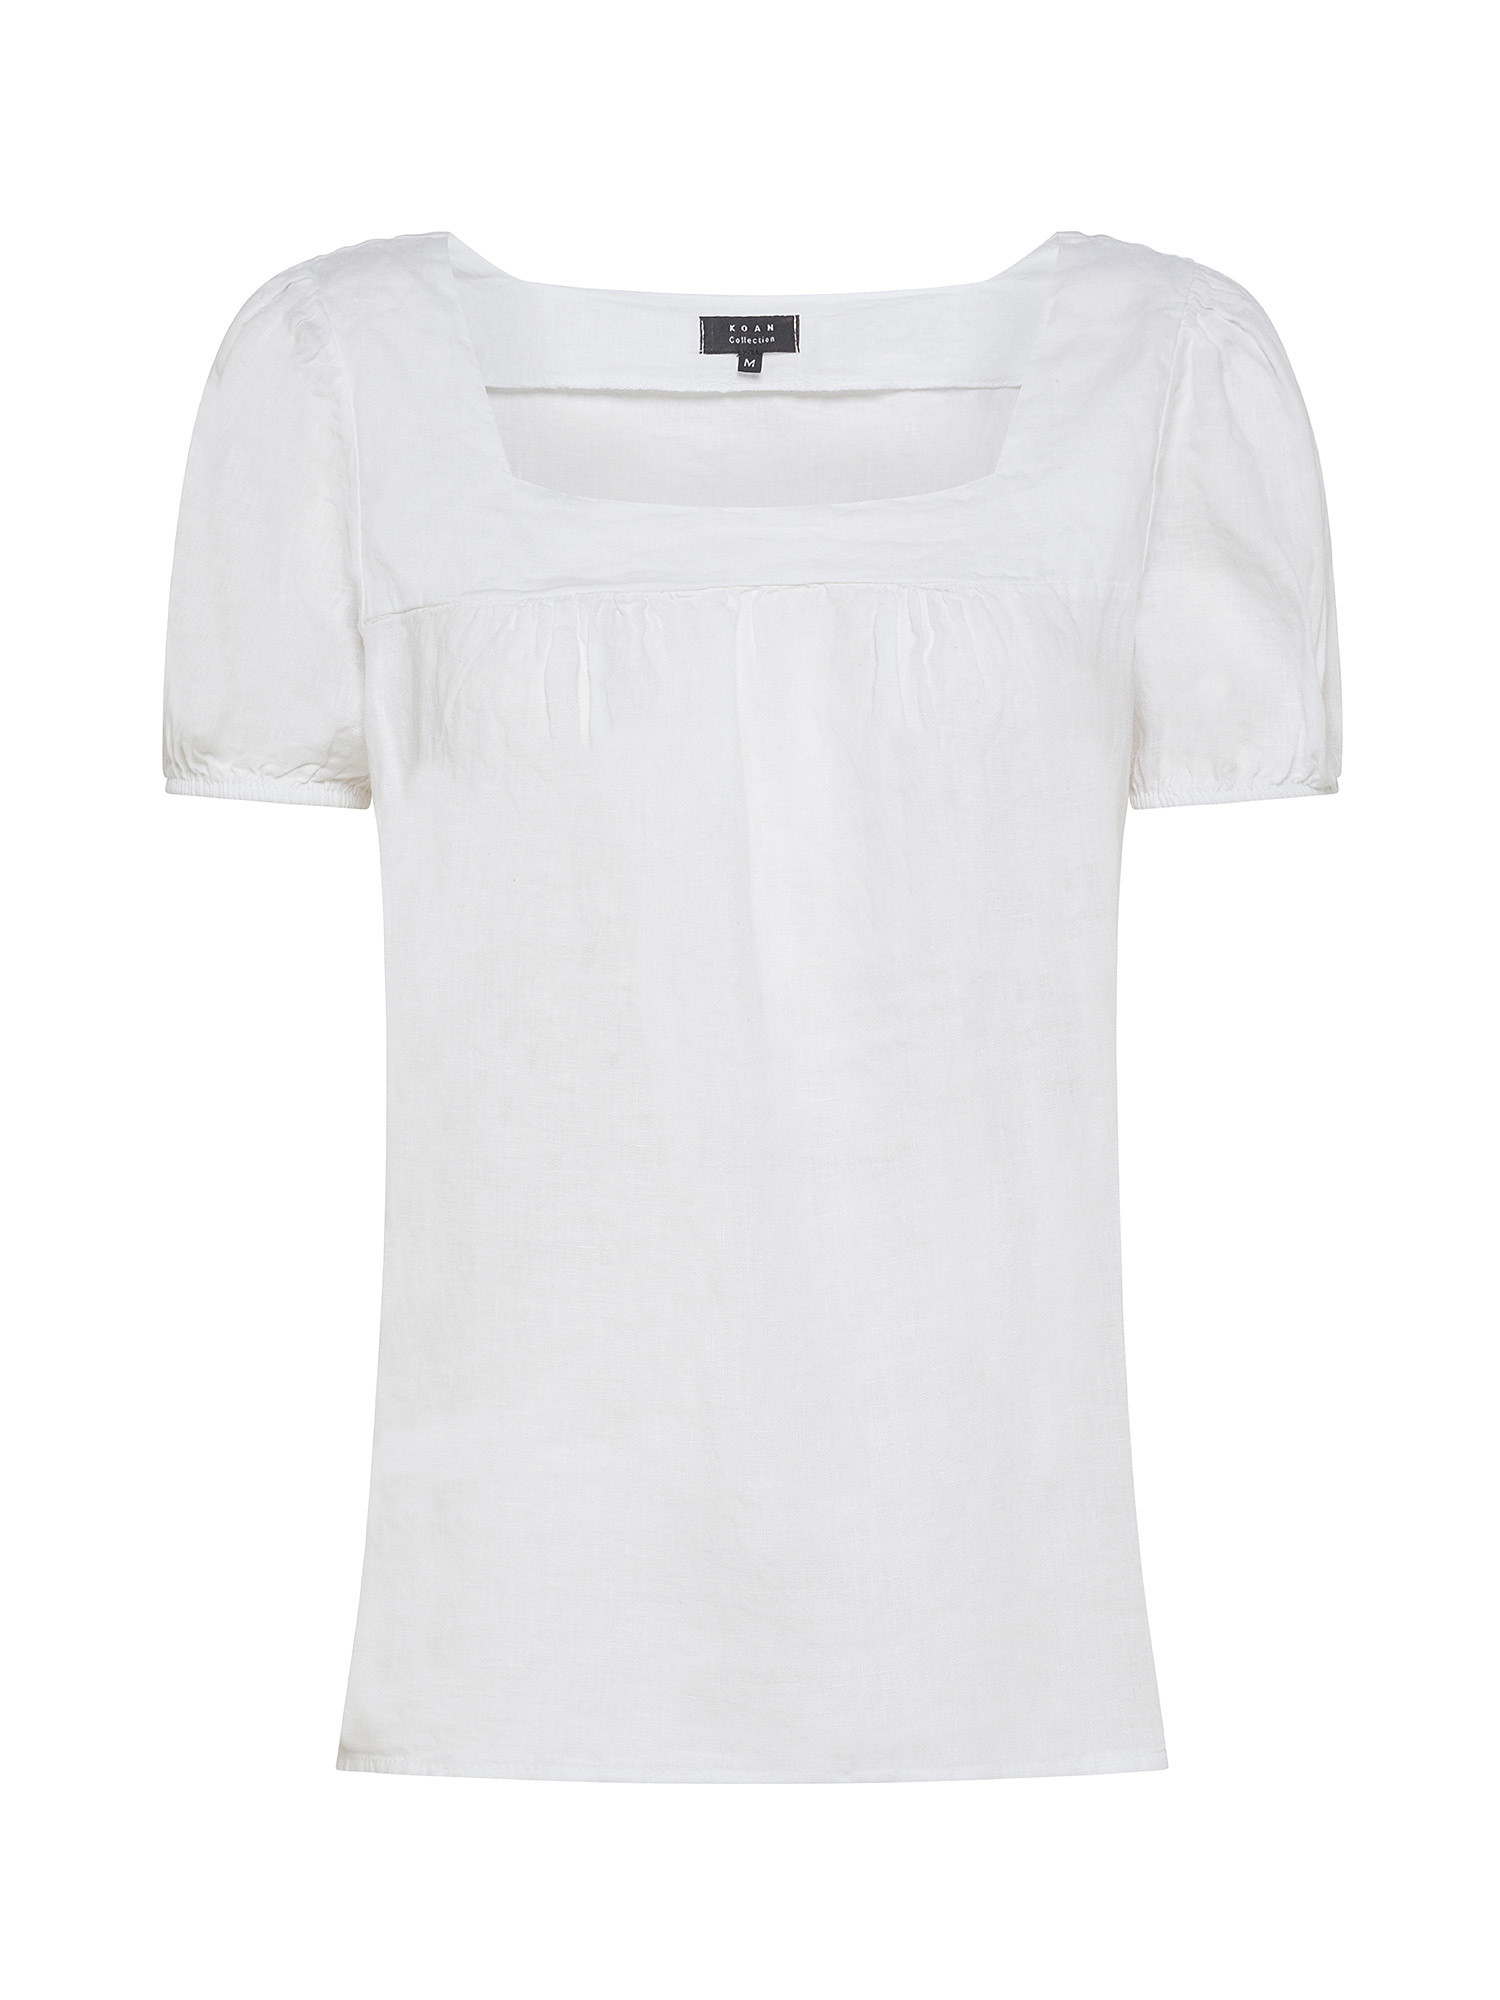 Koan - Blusa in lino, Bianco, large image number 0